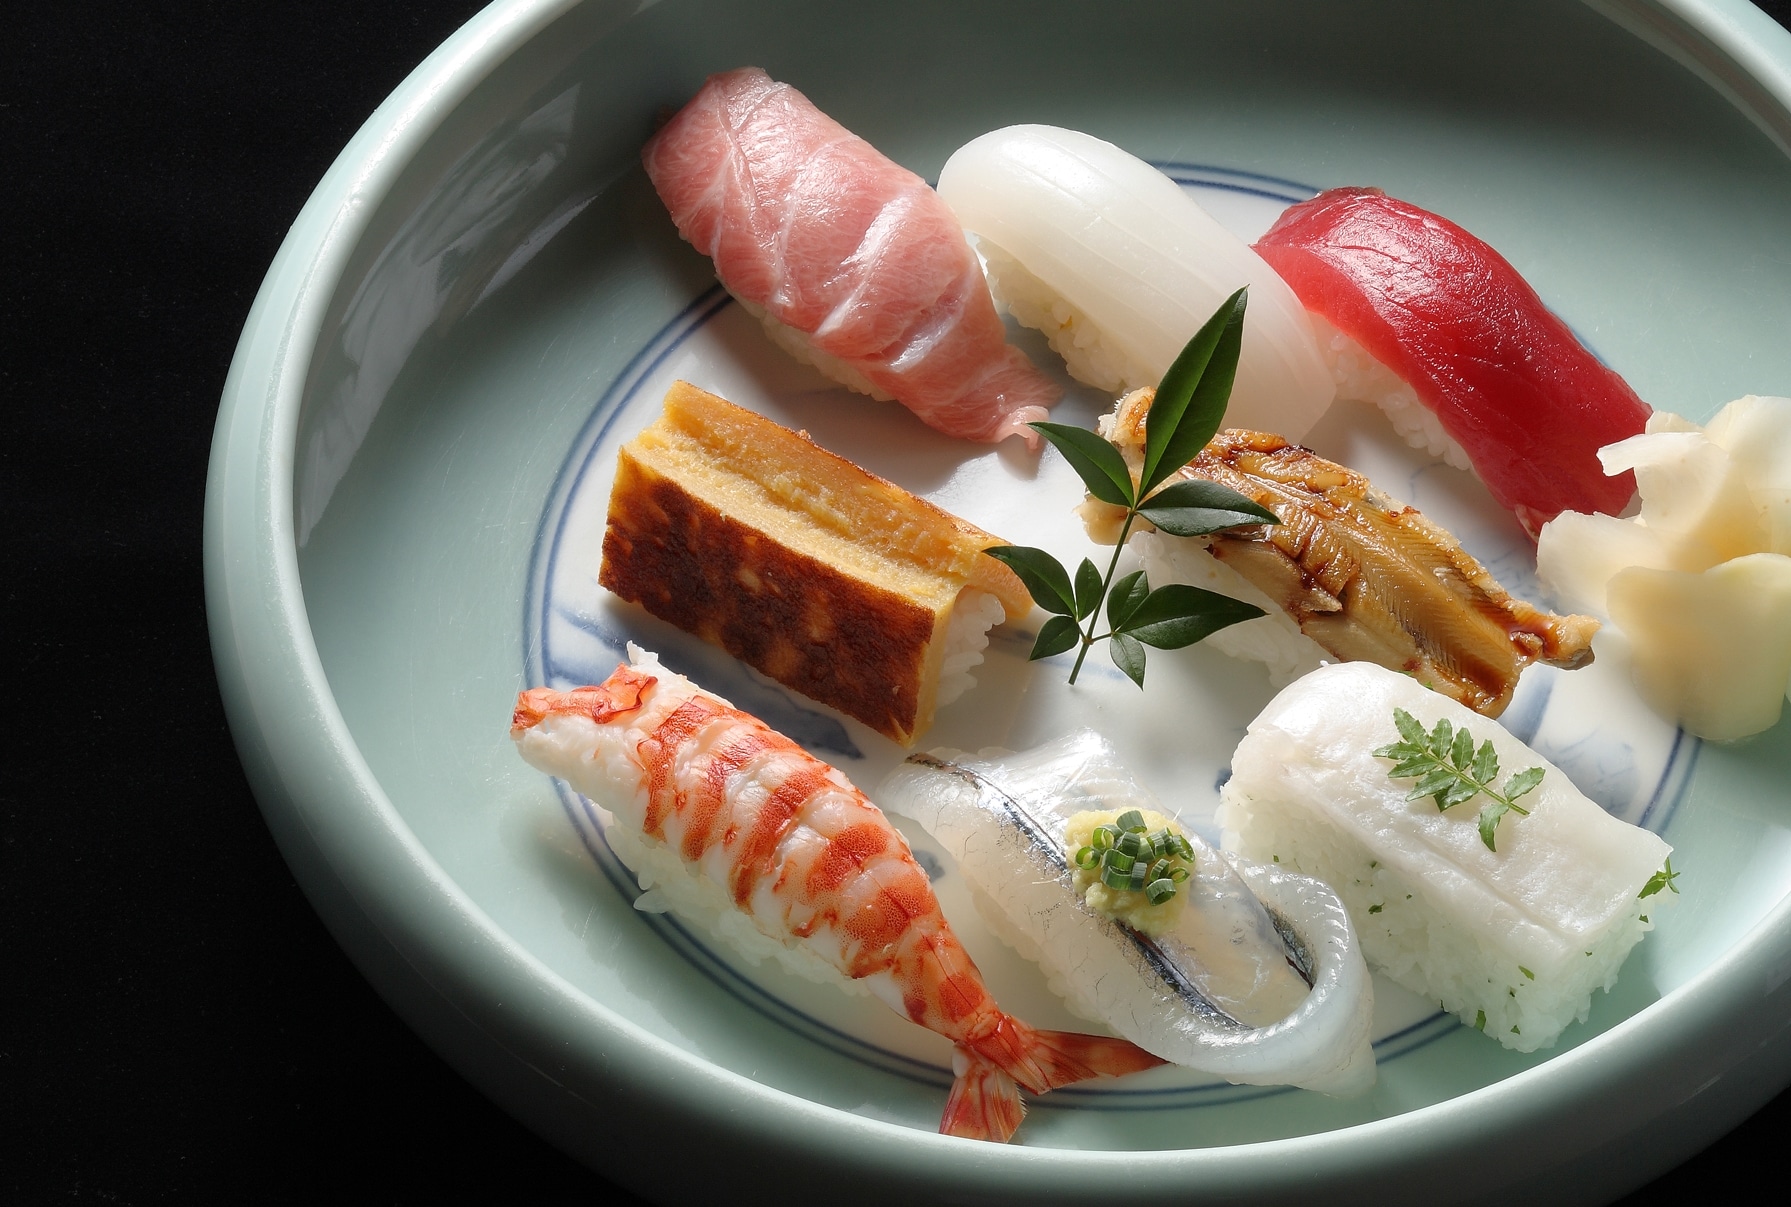 Japanese restaurant "Keyaki" sushi image